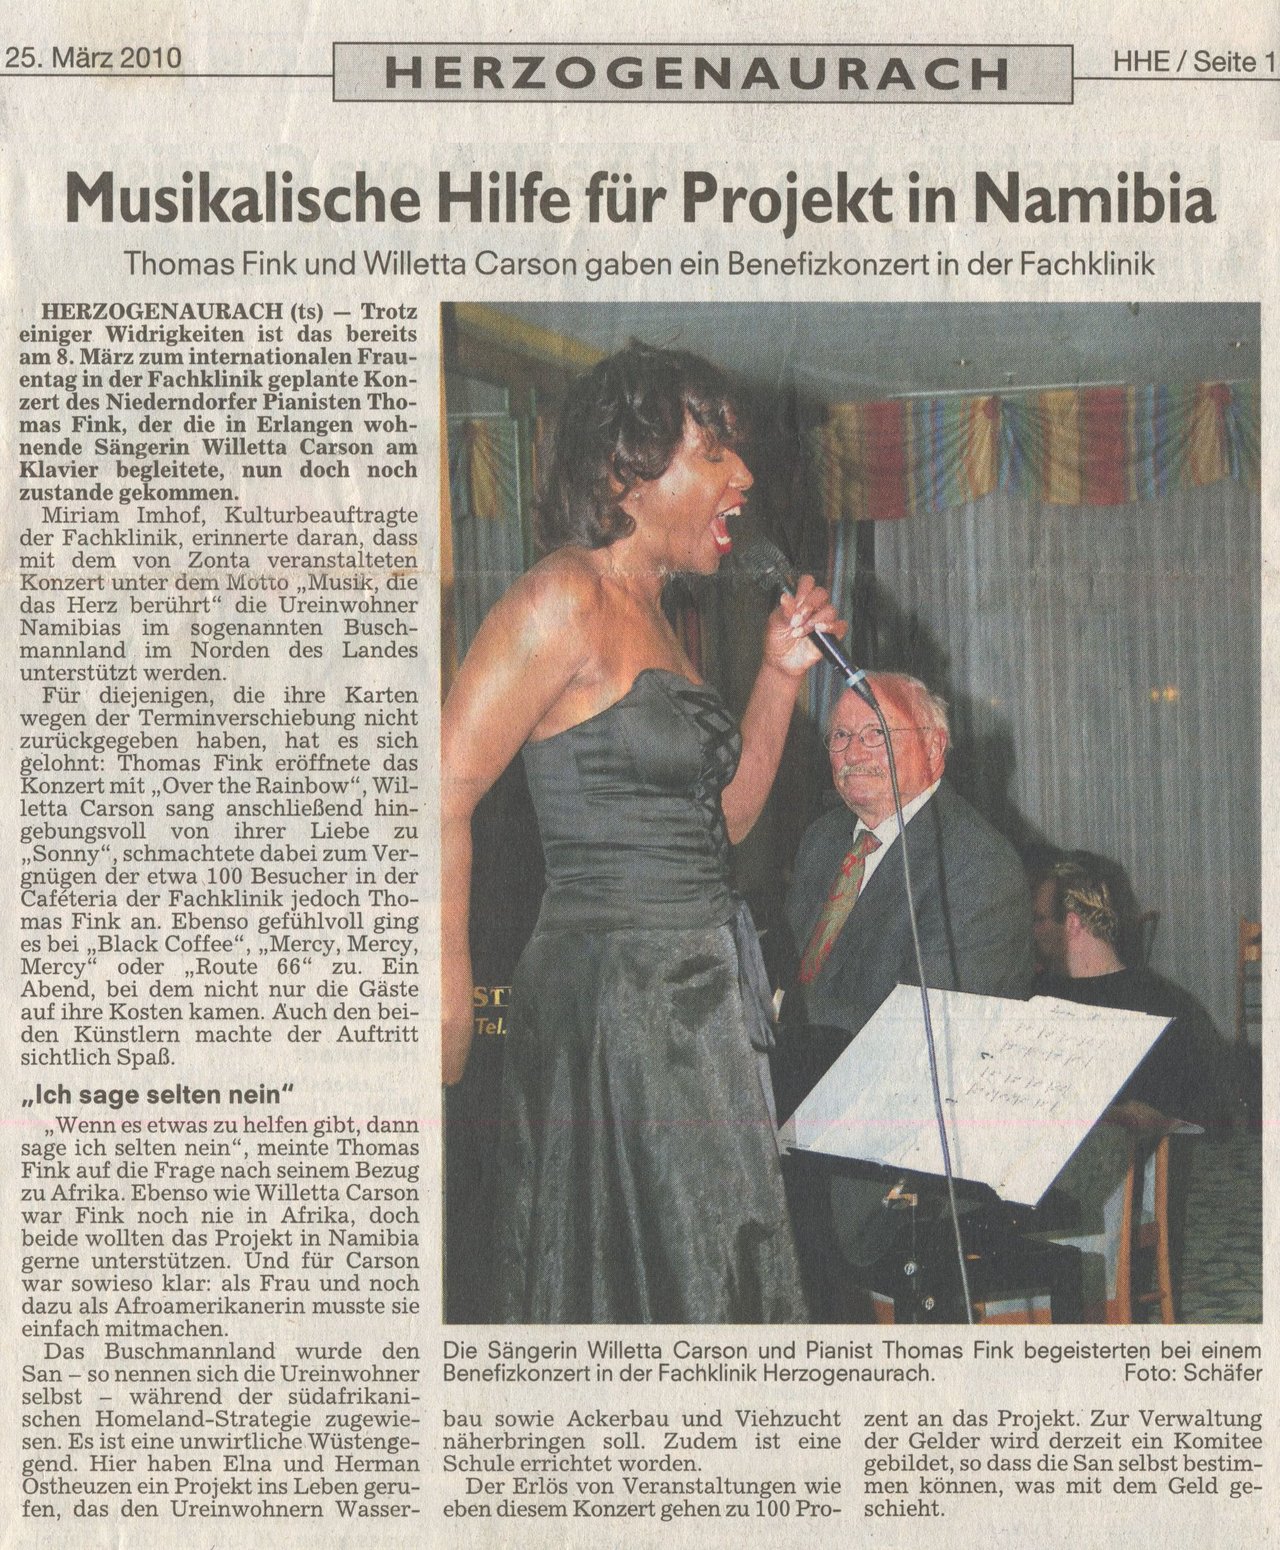 Die Erlangen-Höchstädter Zeitung berichtet über ein Jazzbenefizkonzert mit Thomas Fink and Willetta in der Herzogenauracher Klinik zu Gunsten des Zonta Club, der humanitäre Projekte in Namibia, Afrika unterstützt